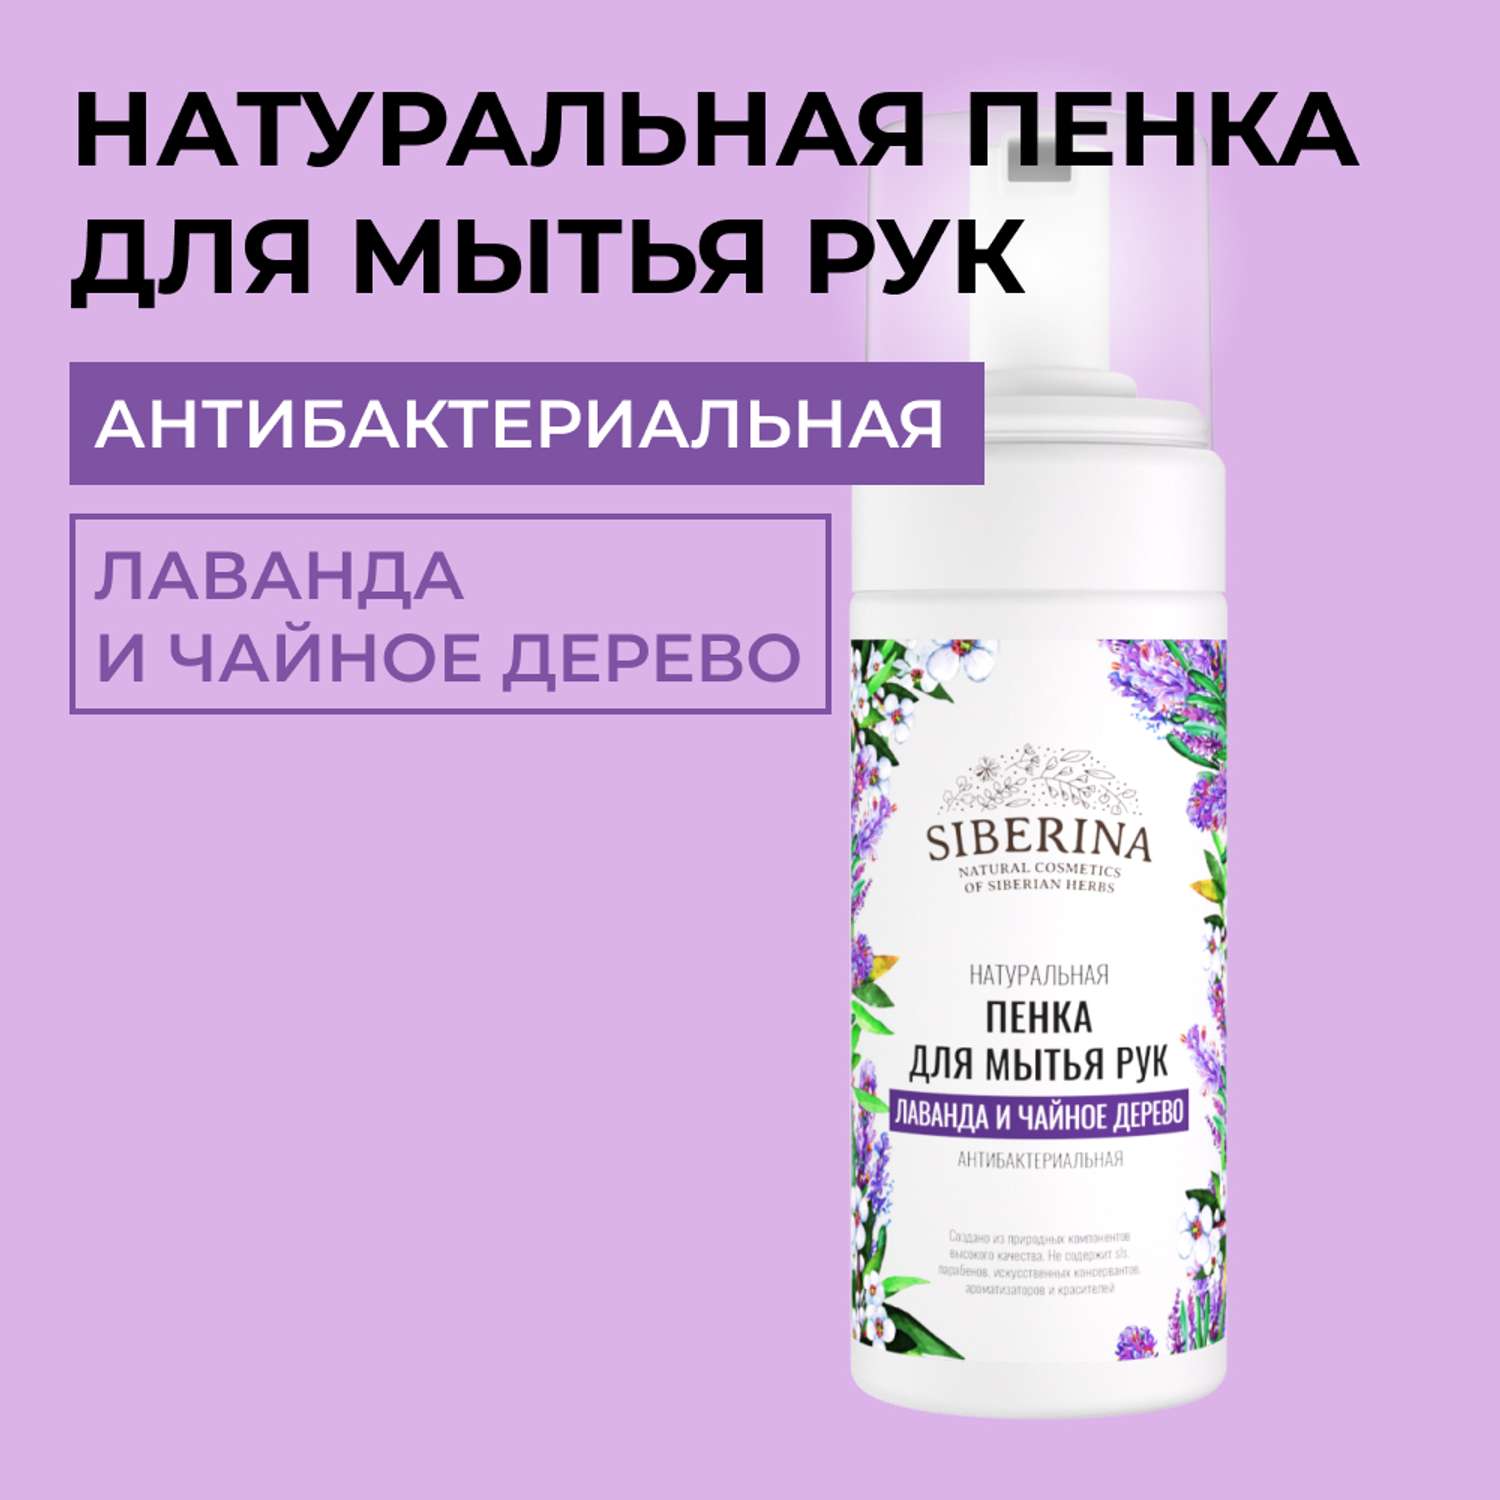 Пенка для мытья рук Siberina натуральная «Лаванда и чайное дерево» антибактериальная 150 мл - фото 1